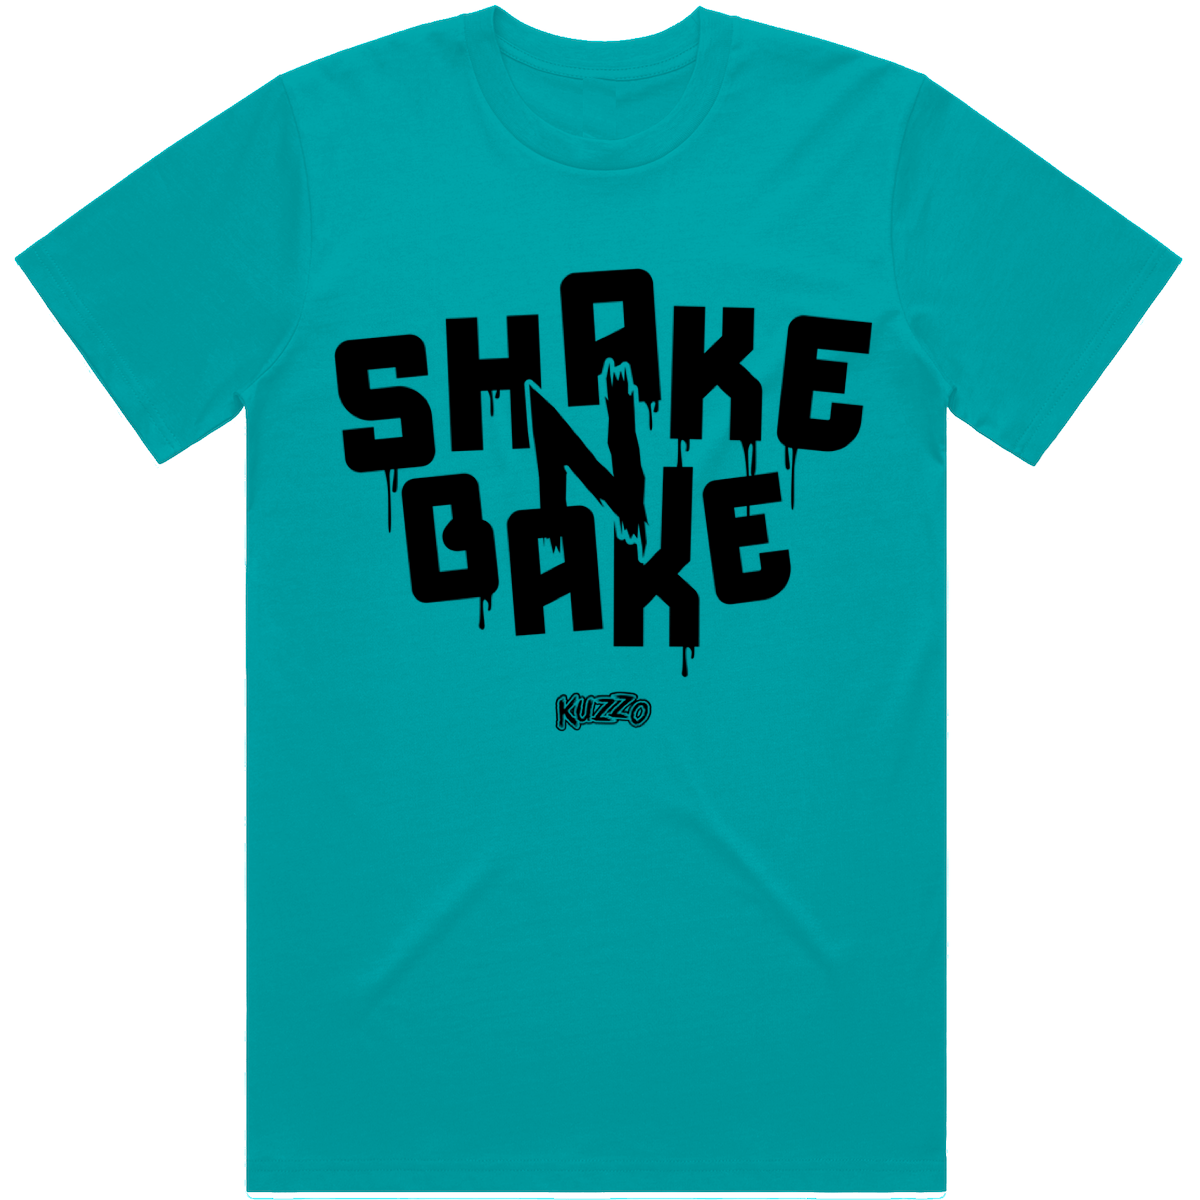 New Balance 610 Bodega | Sneaker Tees | Shirts to Match | Shake Bake